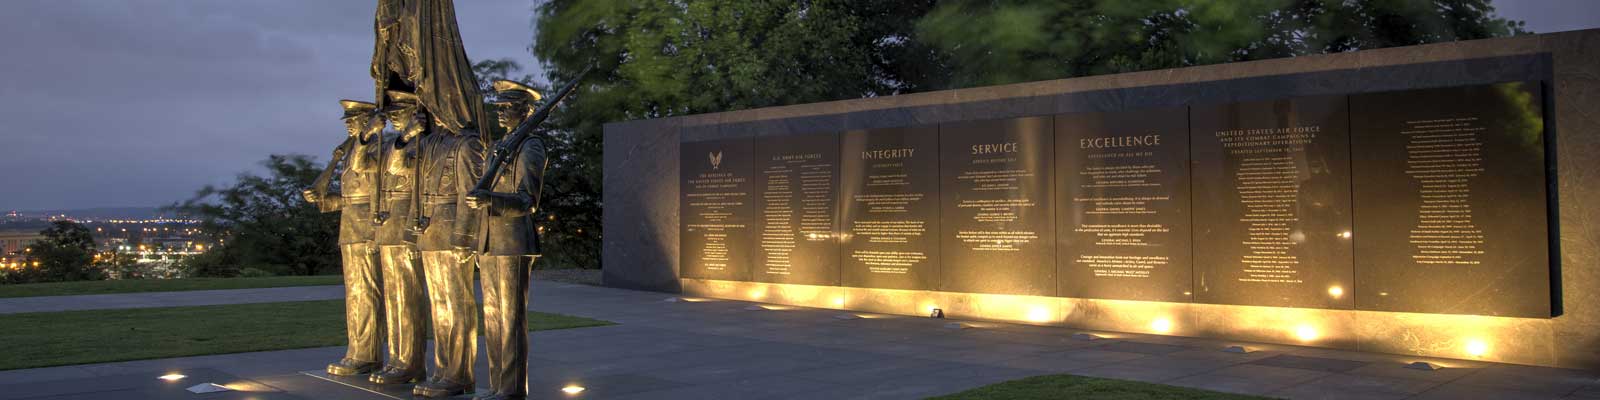 Pictured: Honor Guard Memorial in Arlington, Virginia.